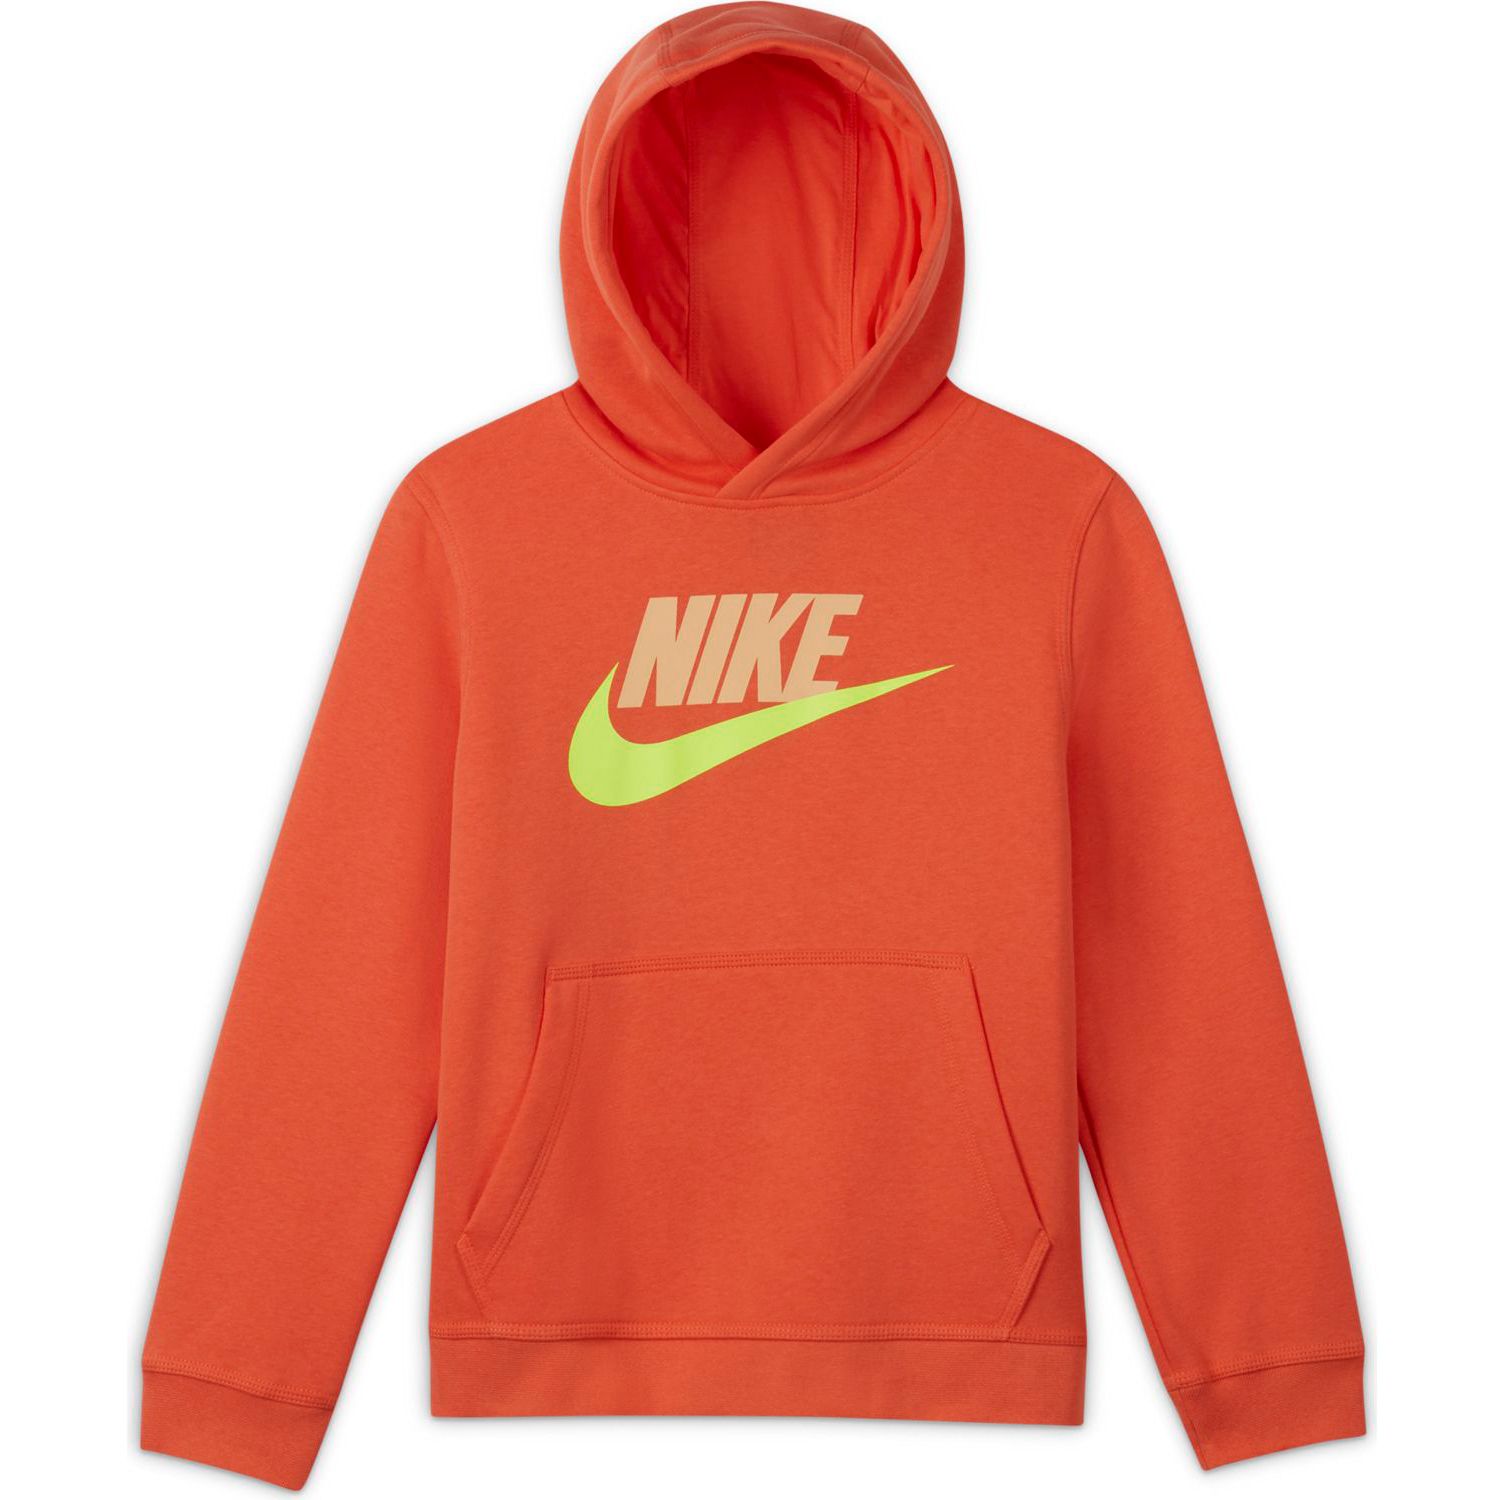 neon orange nike sweatshirt